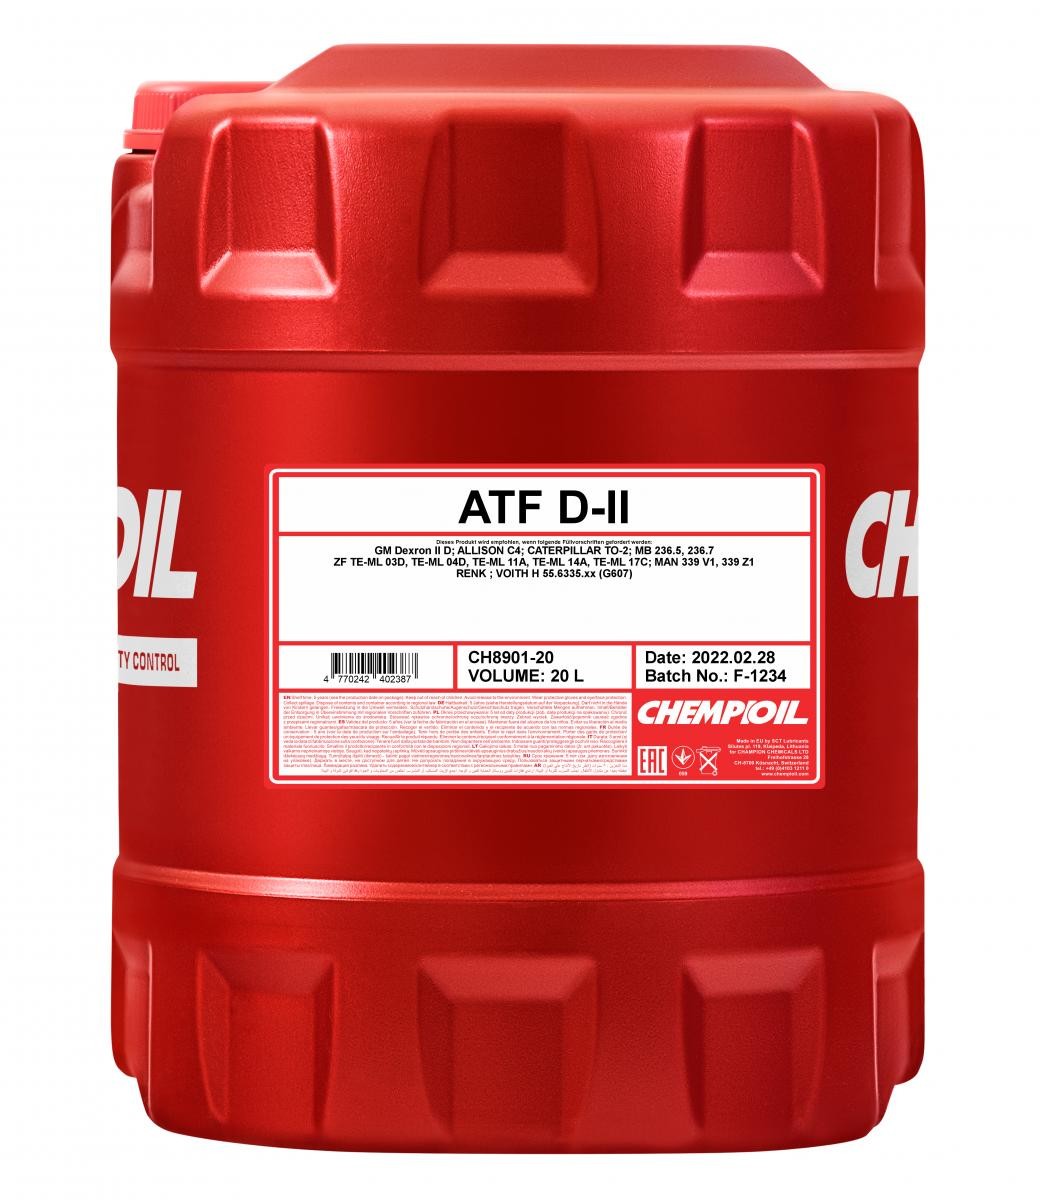 CHEMPIOIL ATF, D-II CH8901-20 Automatic transmission fluid ATF IID, 20l, red